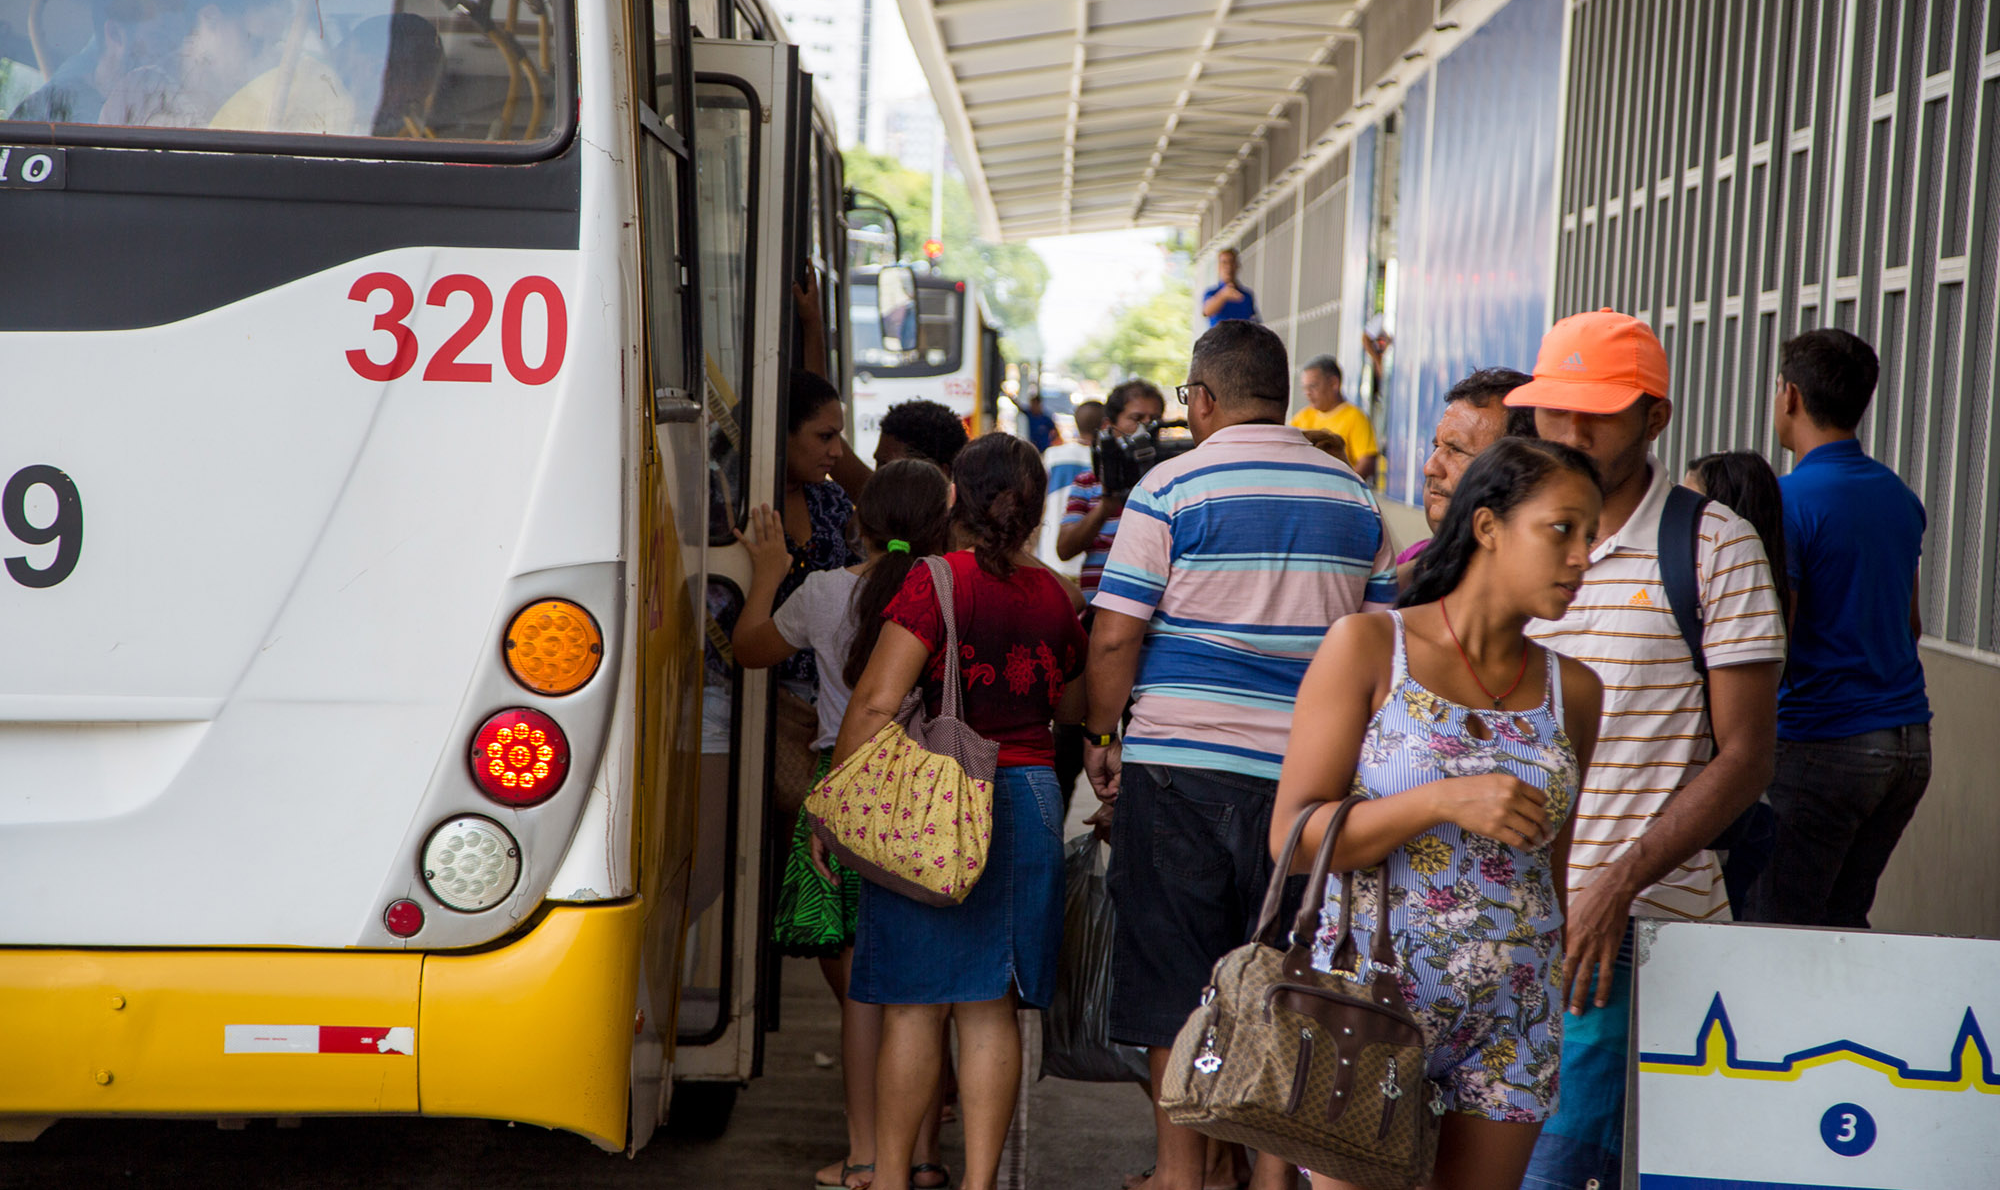 A cidade portuária é uma das mais incivilizadas dentre as grandes aglomerações urbanas do Brasil, administrada por uma das mais medíocres lideranças políticas do país